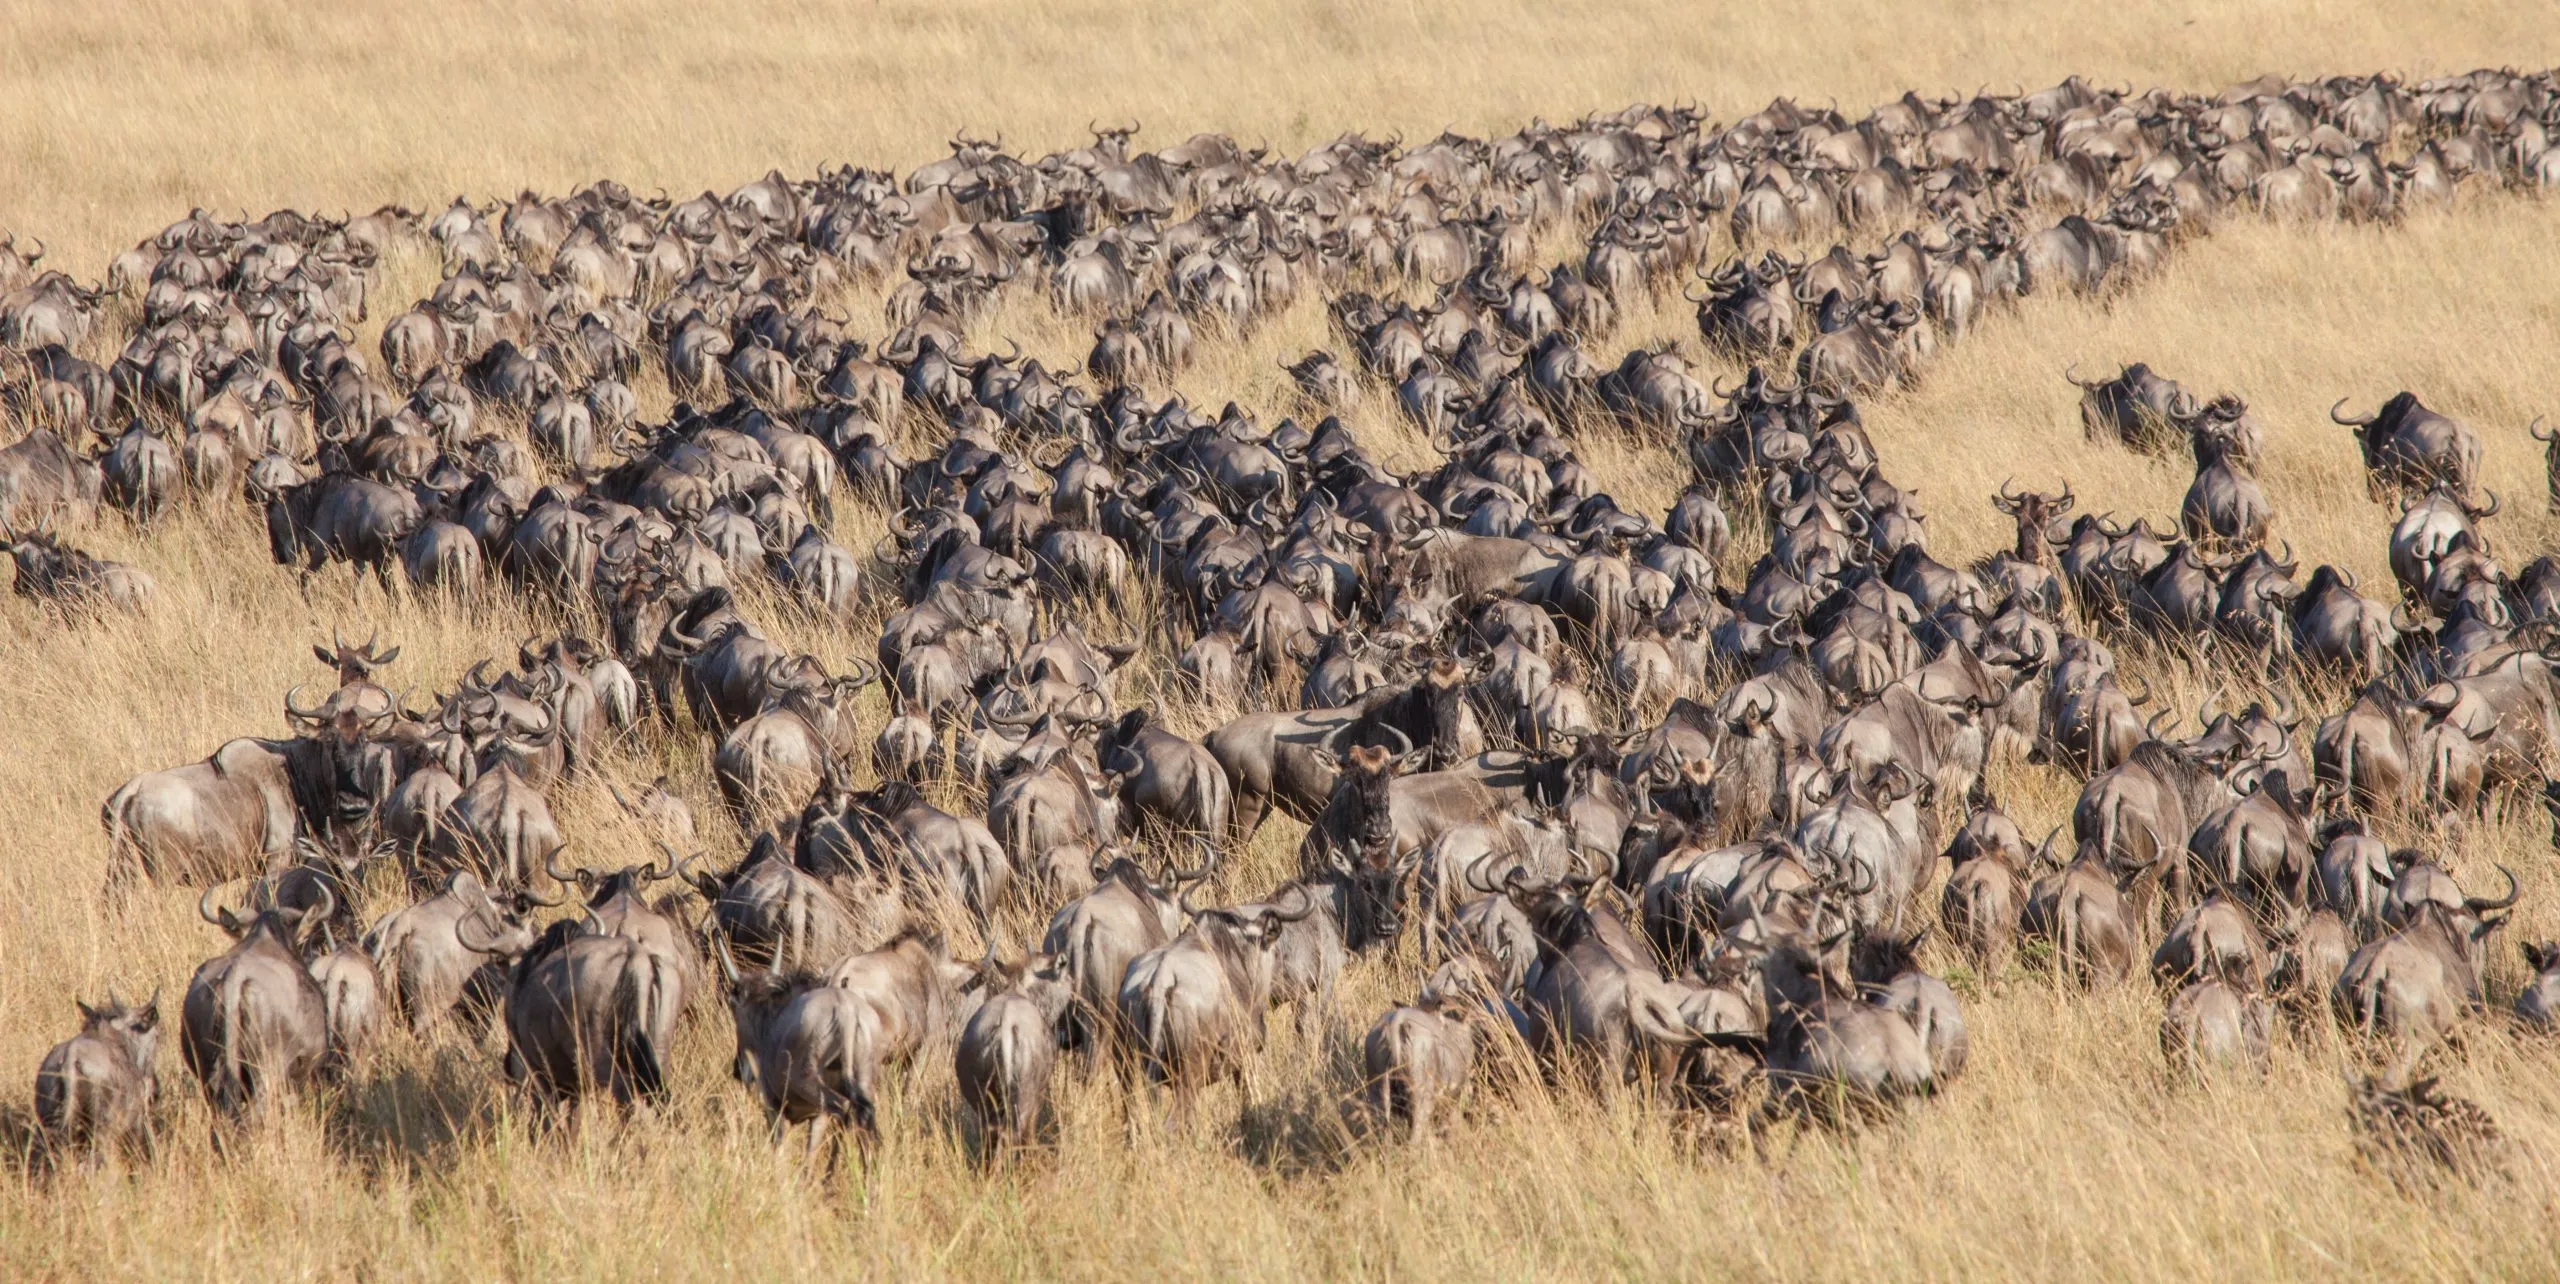 Longues files et masses de gnous lors de la grande migration du Serengeti et du Masai Mara en Afrique de l'Est